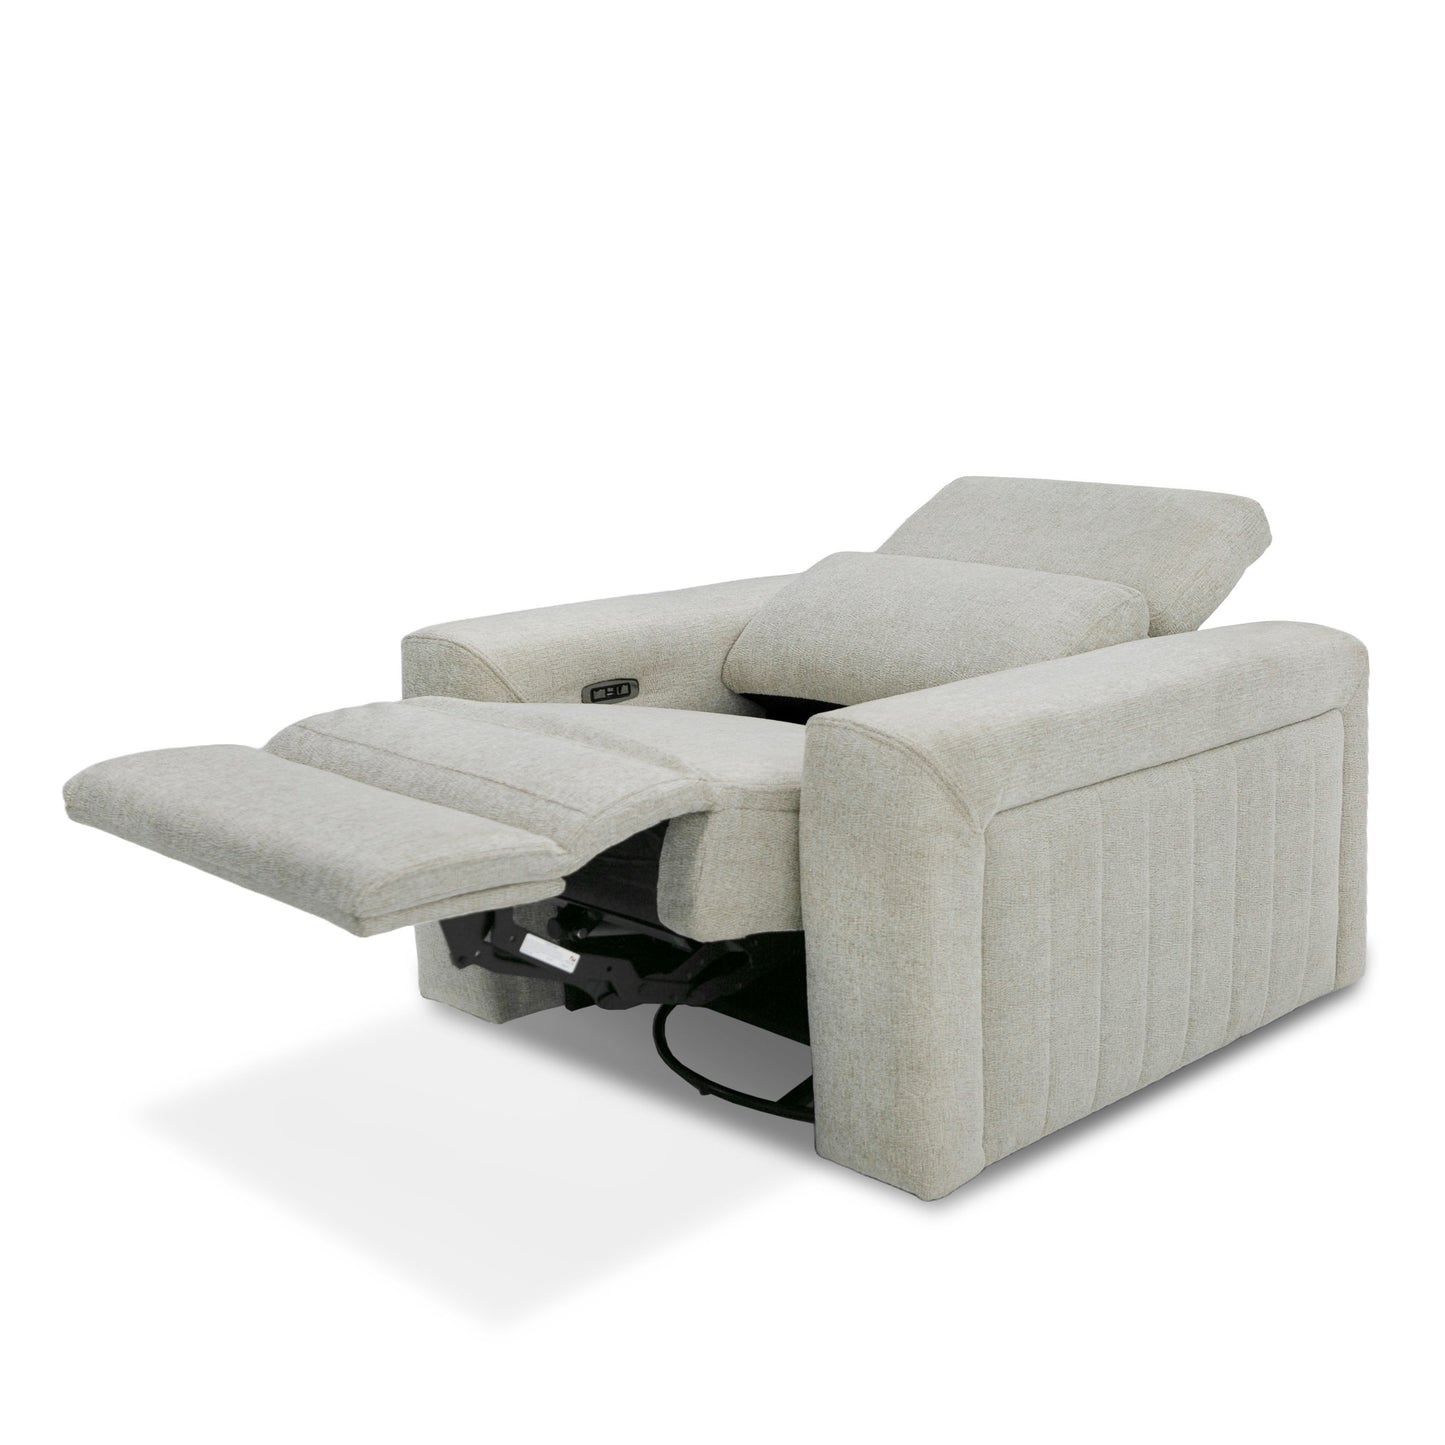 Divani Casa Gering - Modern Beige Fabric Power Recliner Chair